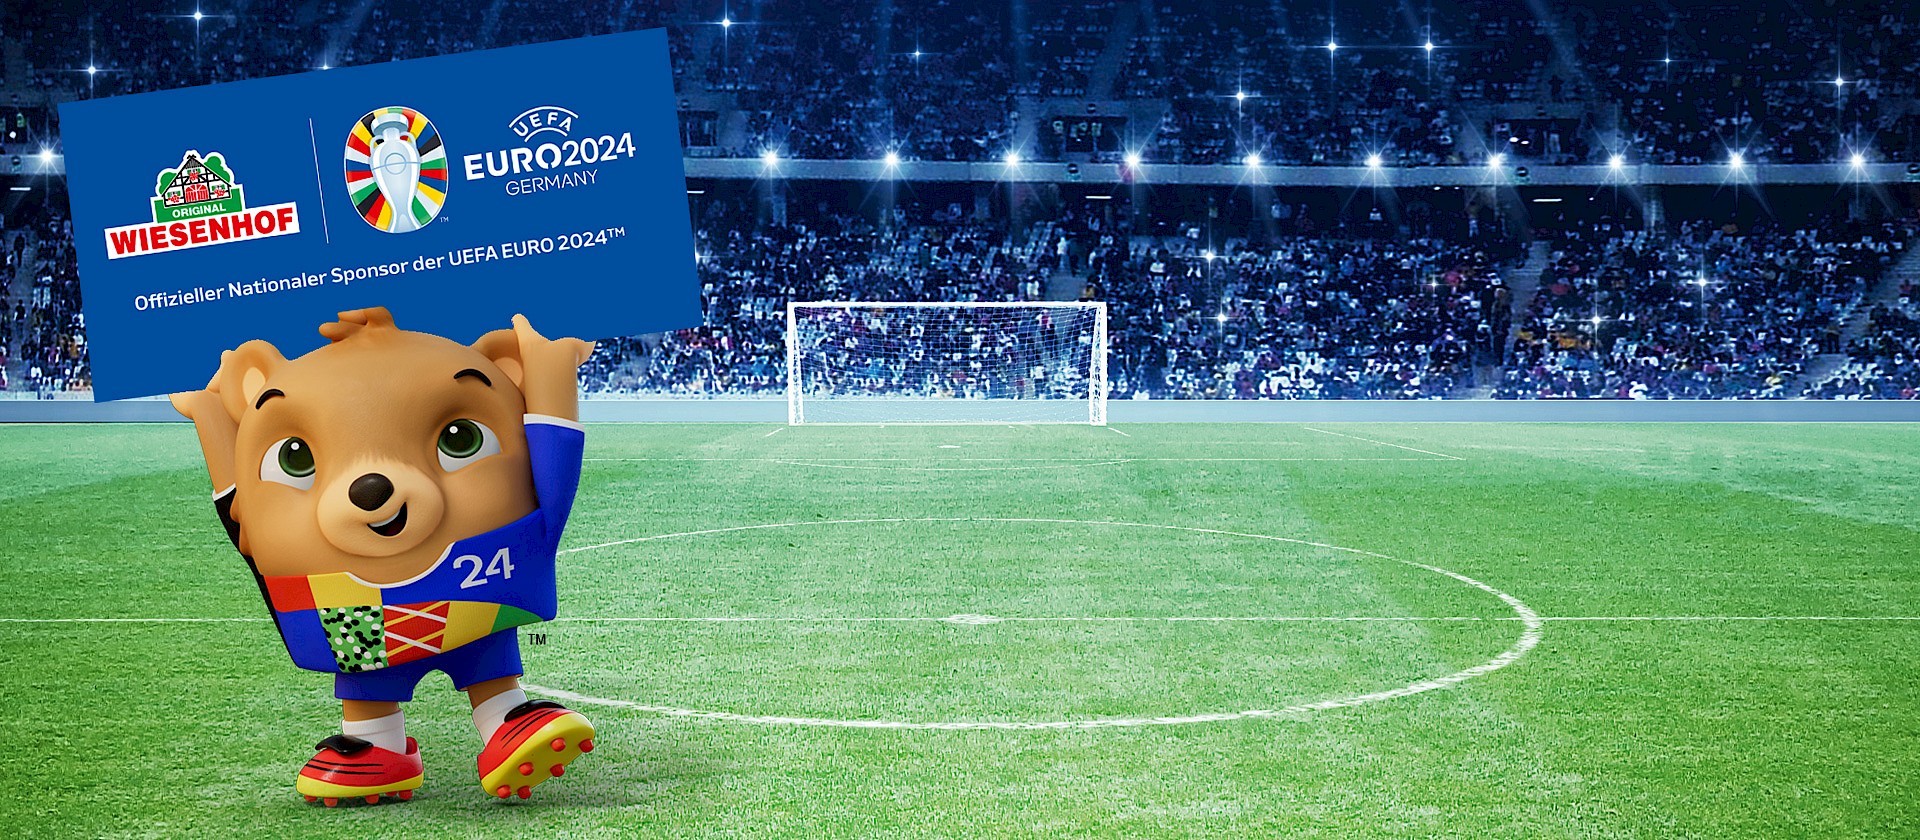 WIESENHOF ist offizieller Nationaler Sponsor der UEFA EURO 2024™ in Deutschland.